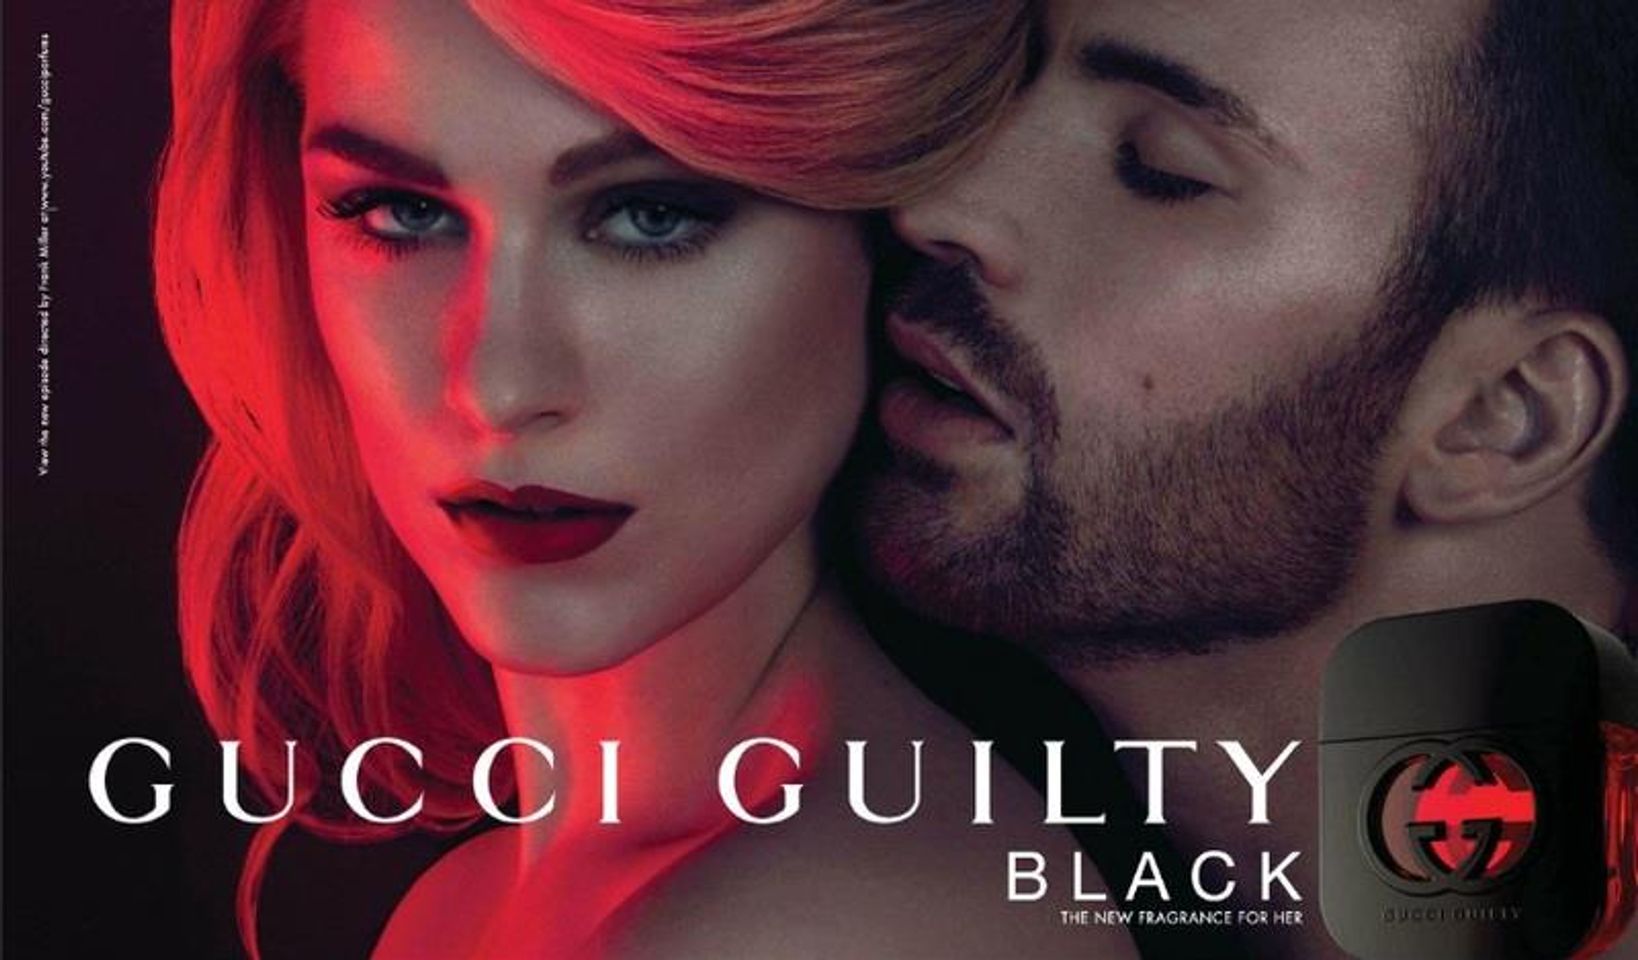 Nước hoa Gucci Guilty Black cho phái nữ thêm gợi cảm, hấp dẫn và lôi cuốn